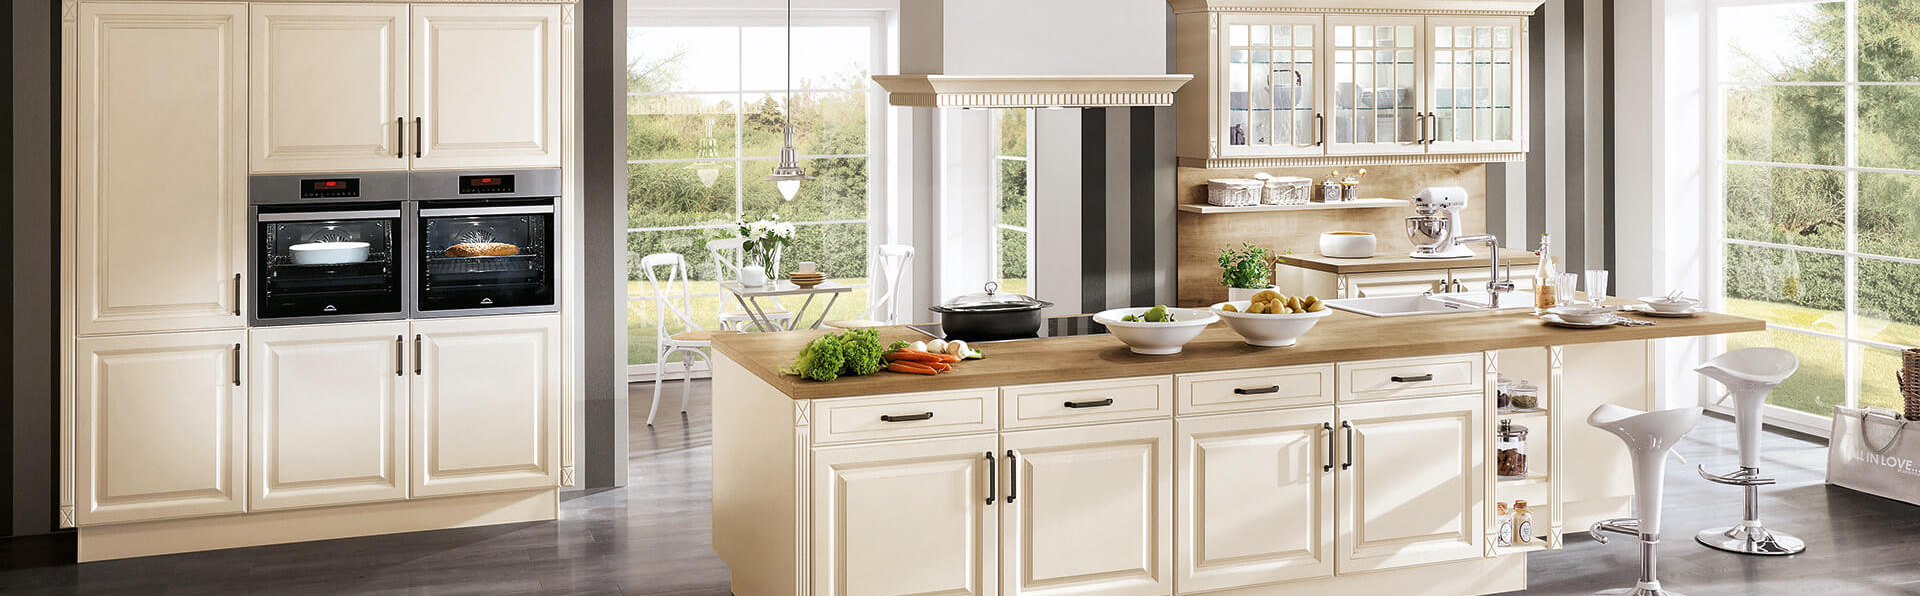 Moderne Kücheninsel Landhaus in creme weiß mit Kamin und Glastür﻿